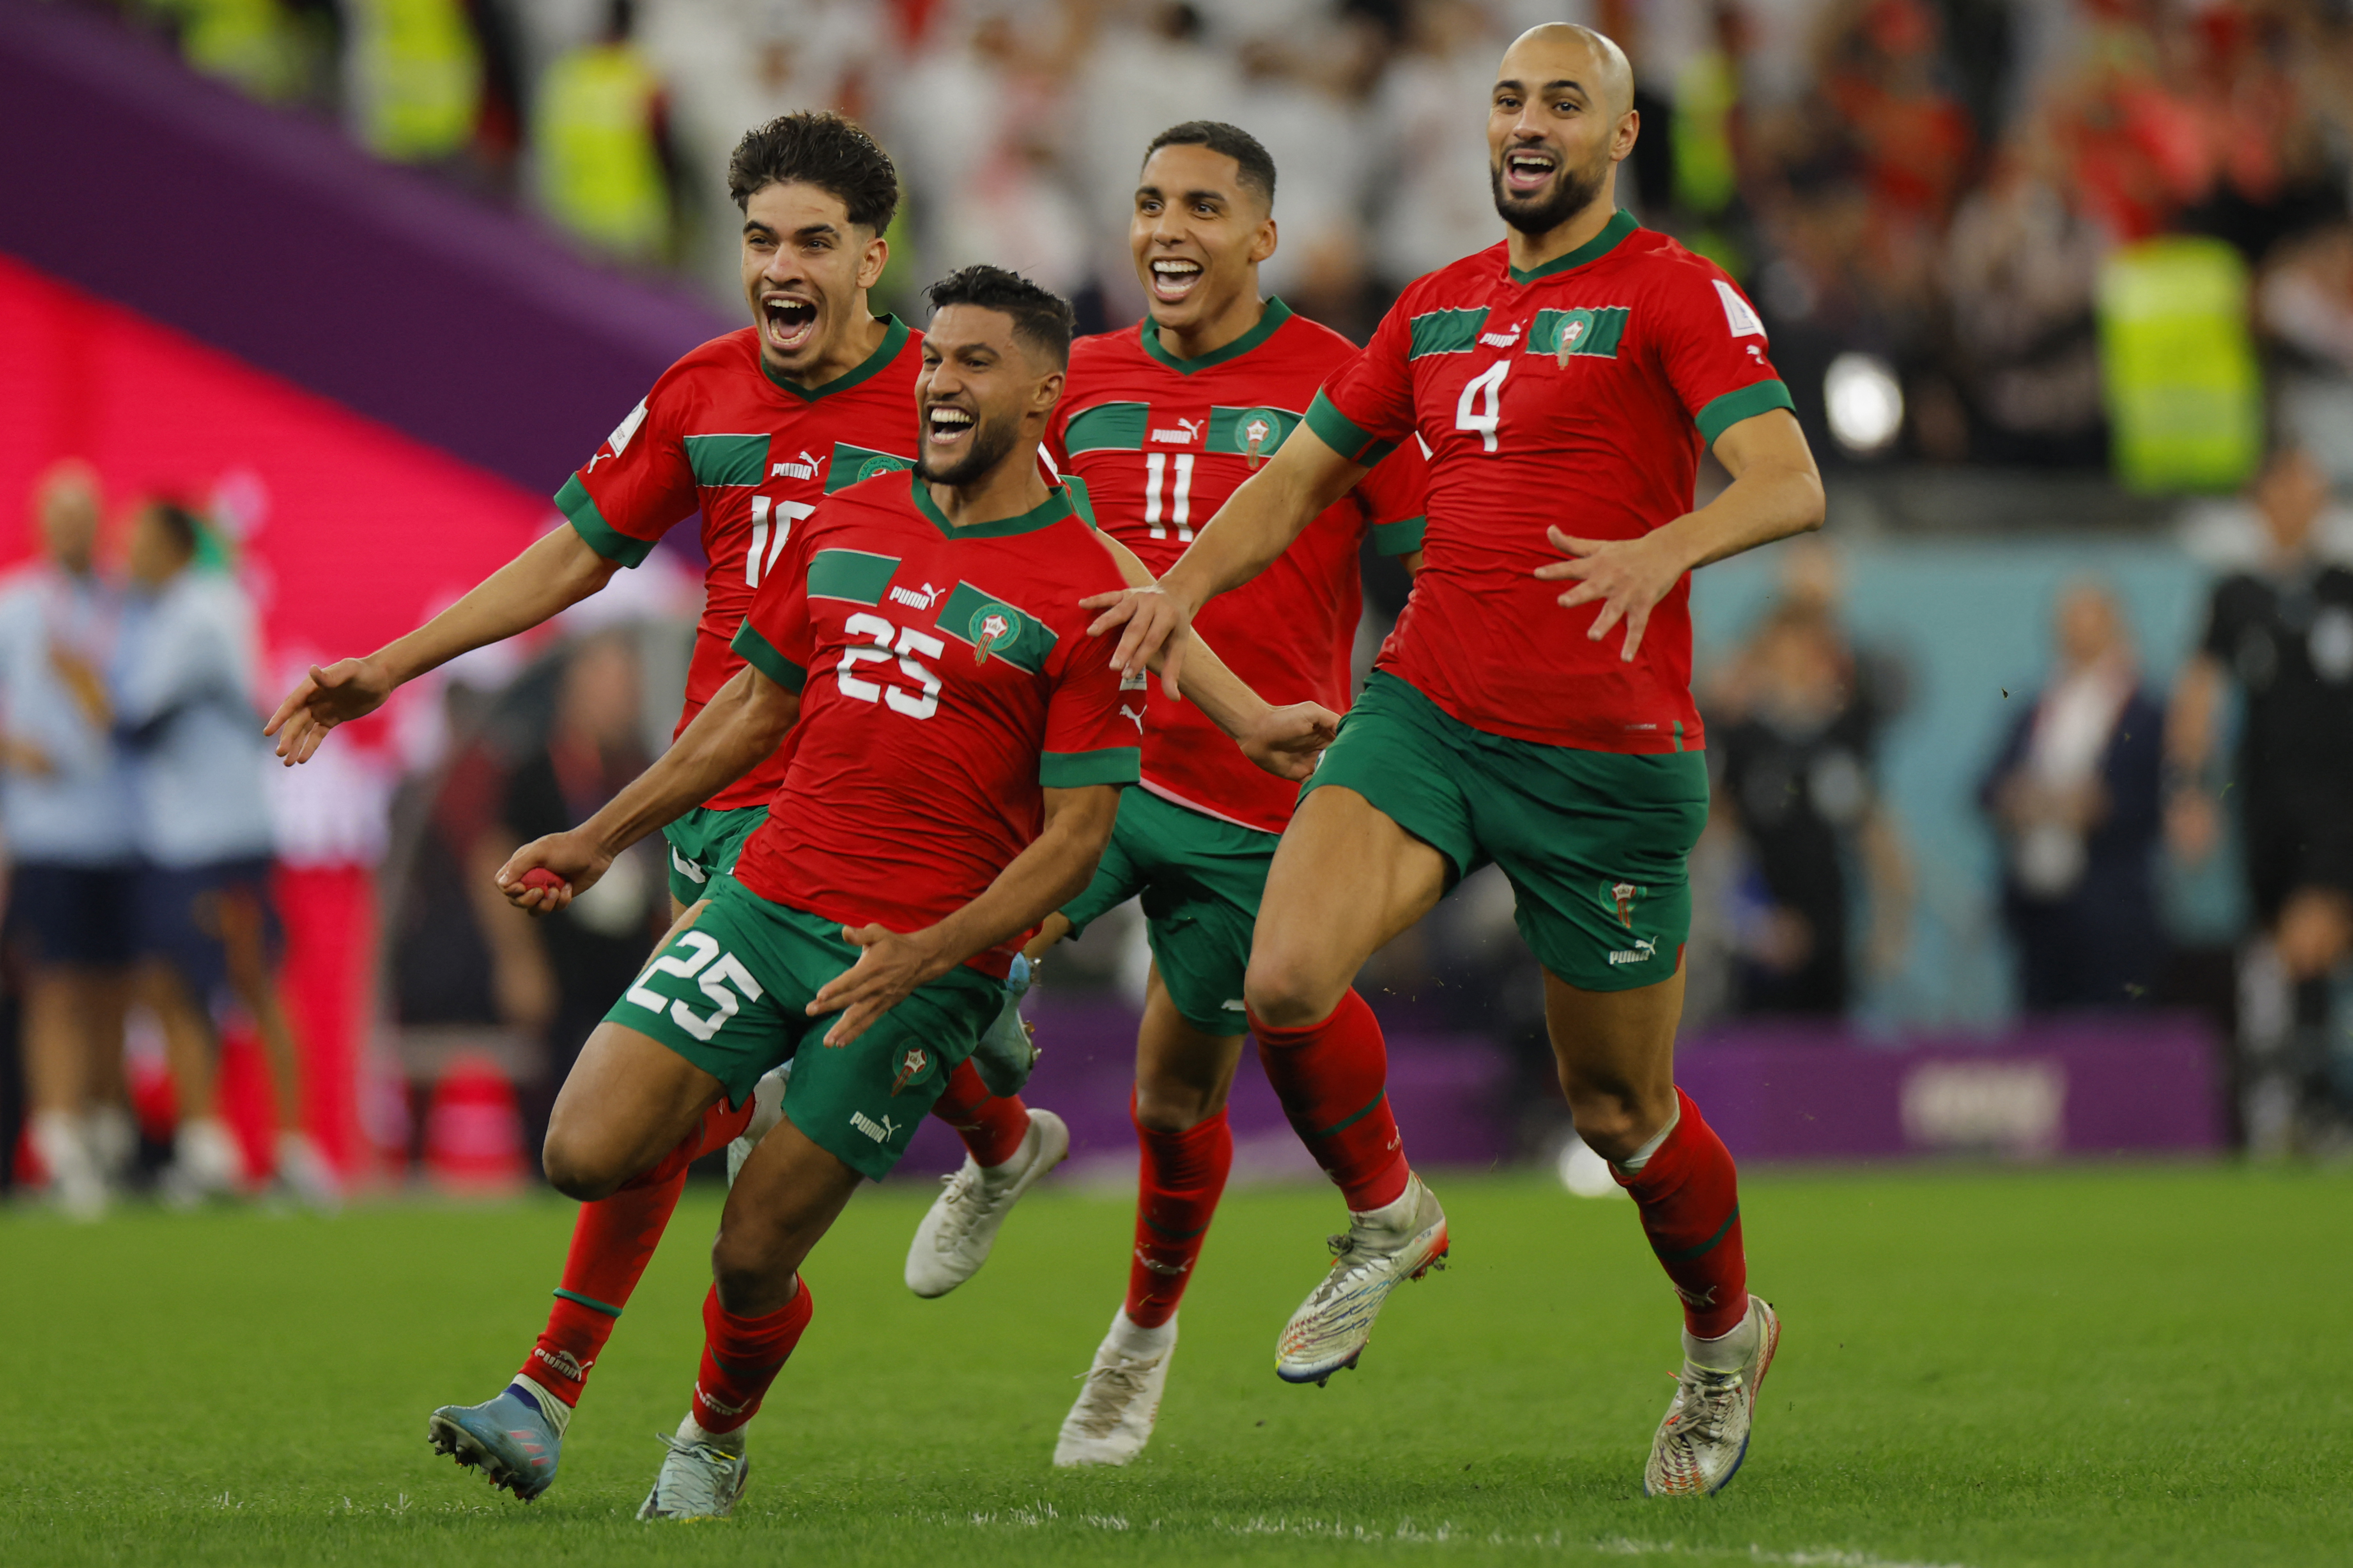 Marrocos vence Espanha nos pênaltis e avança para as quartas de final